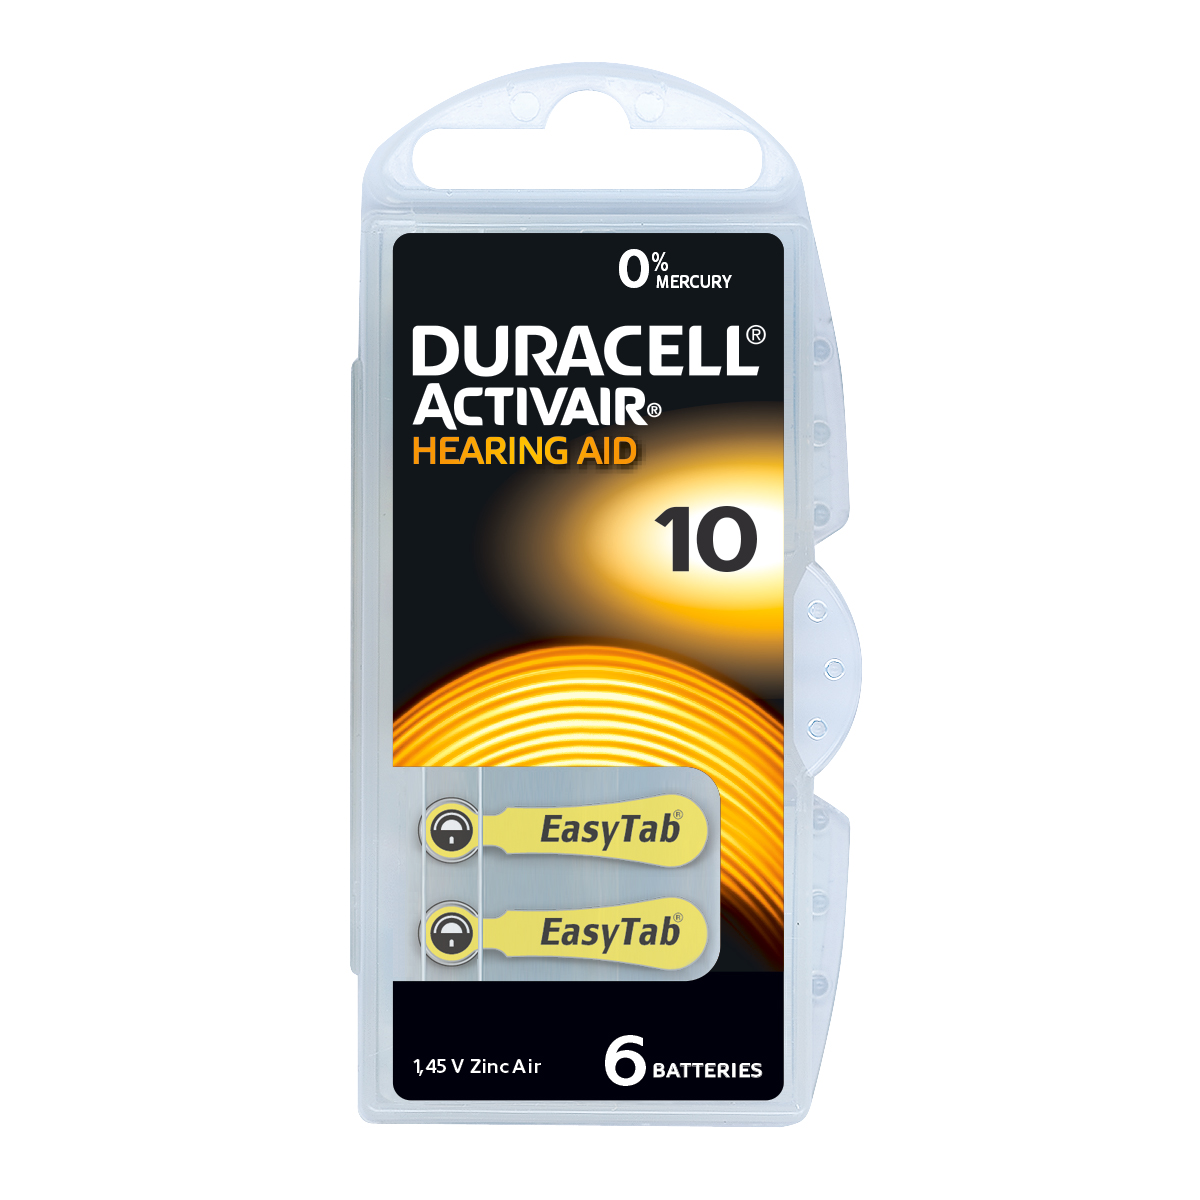 Duracell Activair Pack 6 Hörgerätebatterien Zink Air Nr. 10, Blister